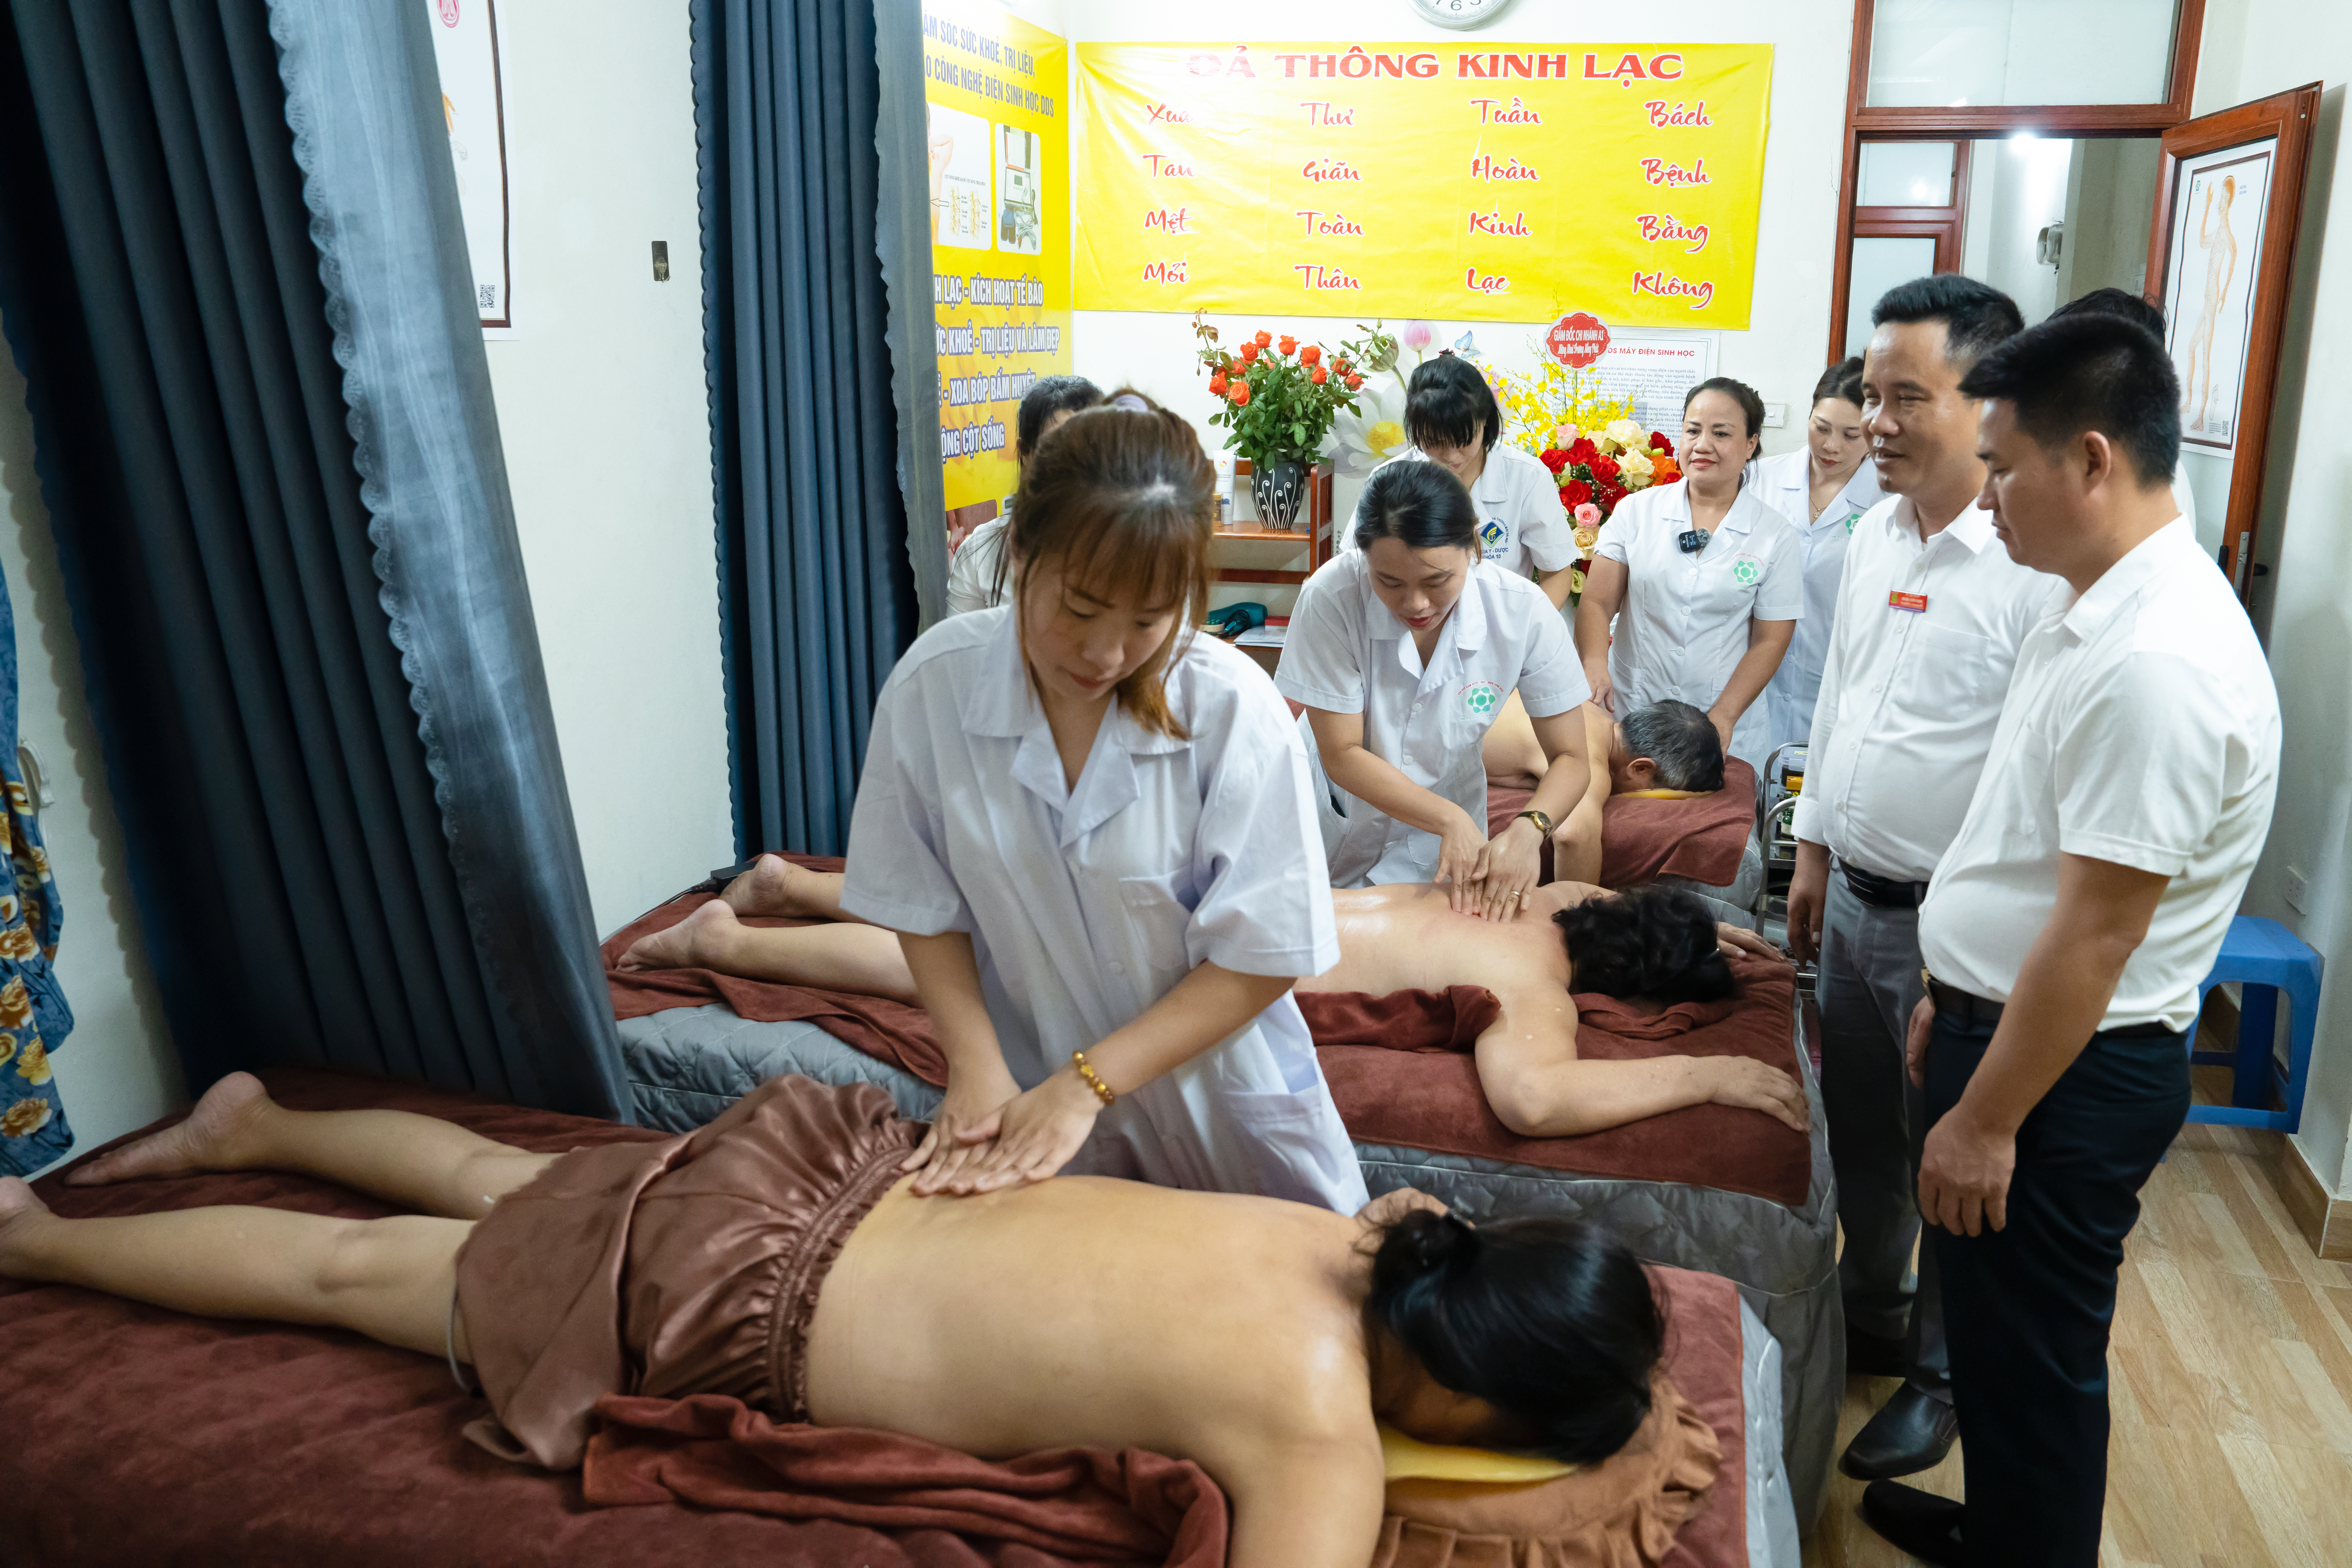 Chi nhánh DDS A168 (Yên Phong, Bắc Ninh) khai trương, nhận quyết định thành lập trung tâm chăm sóc sức khỏe cộng đồng bằng công nghệ DDS Anh Minh